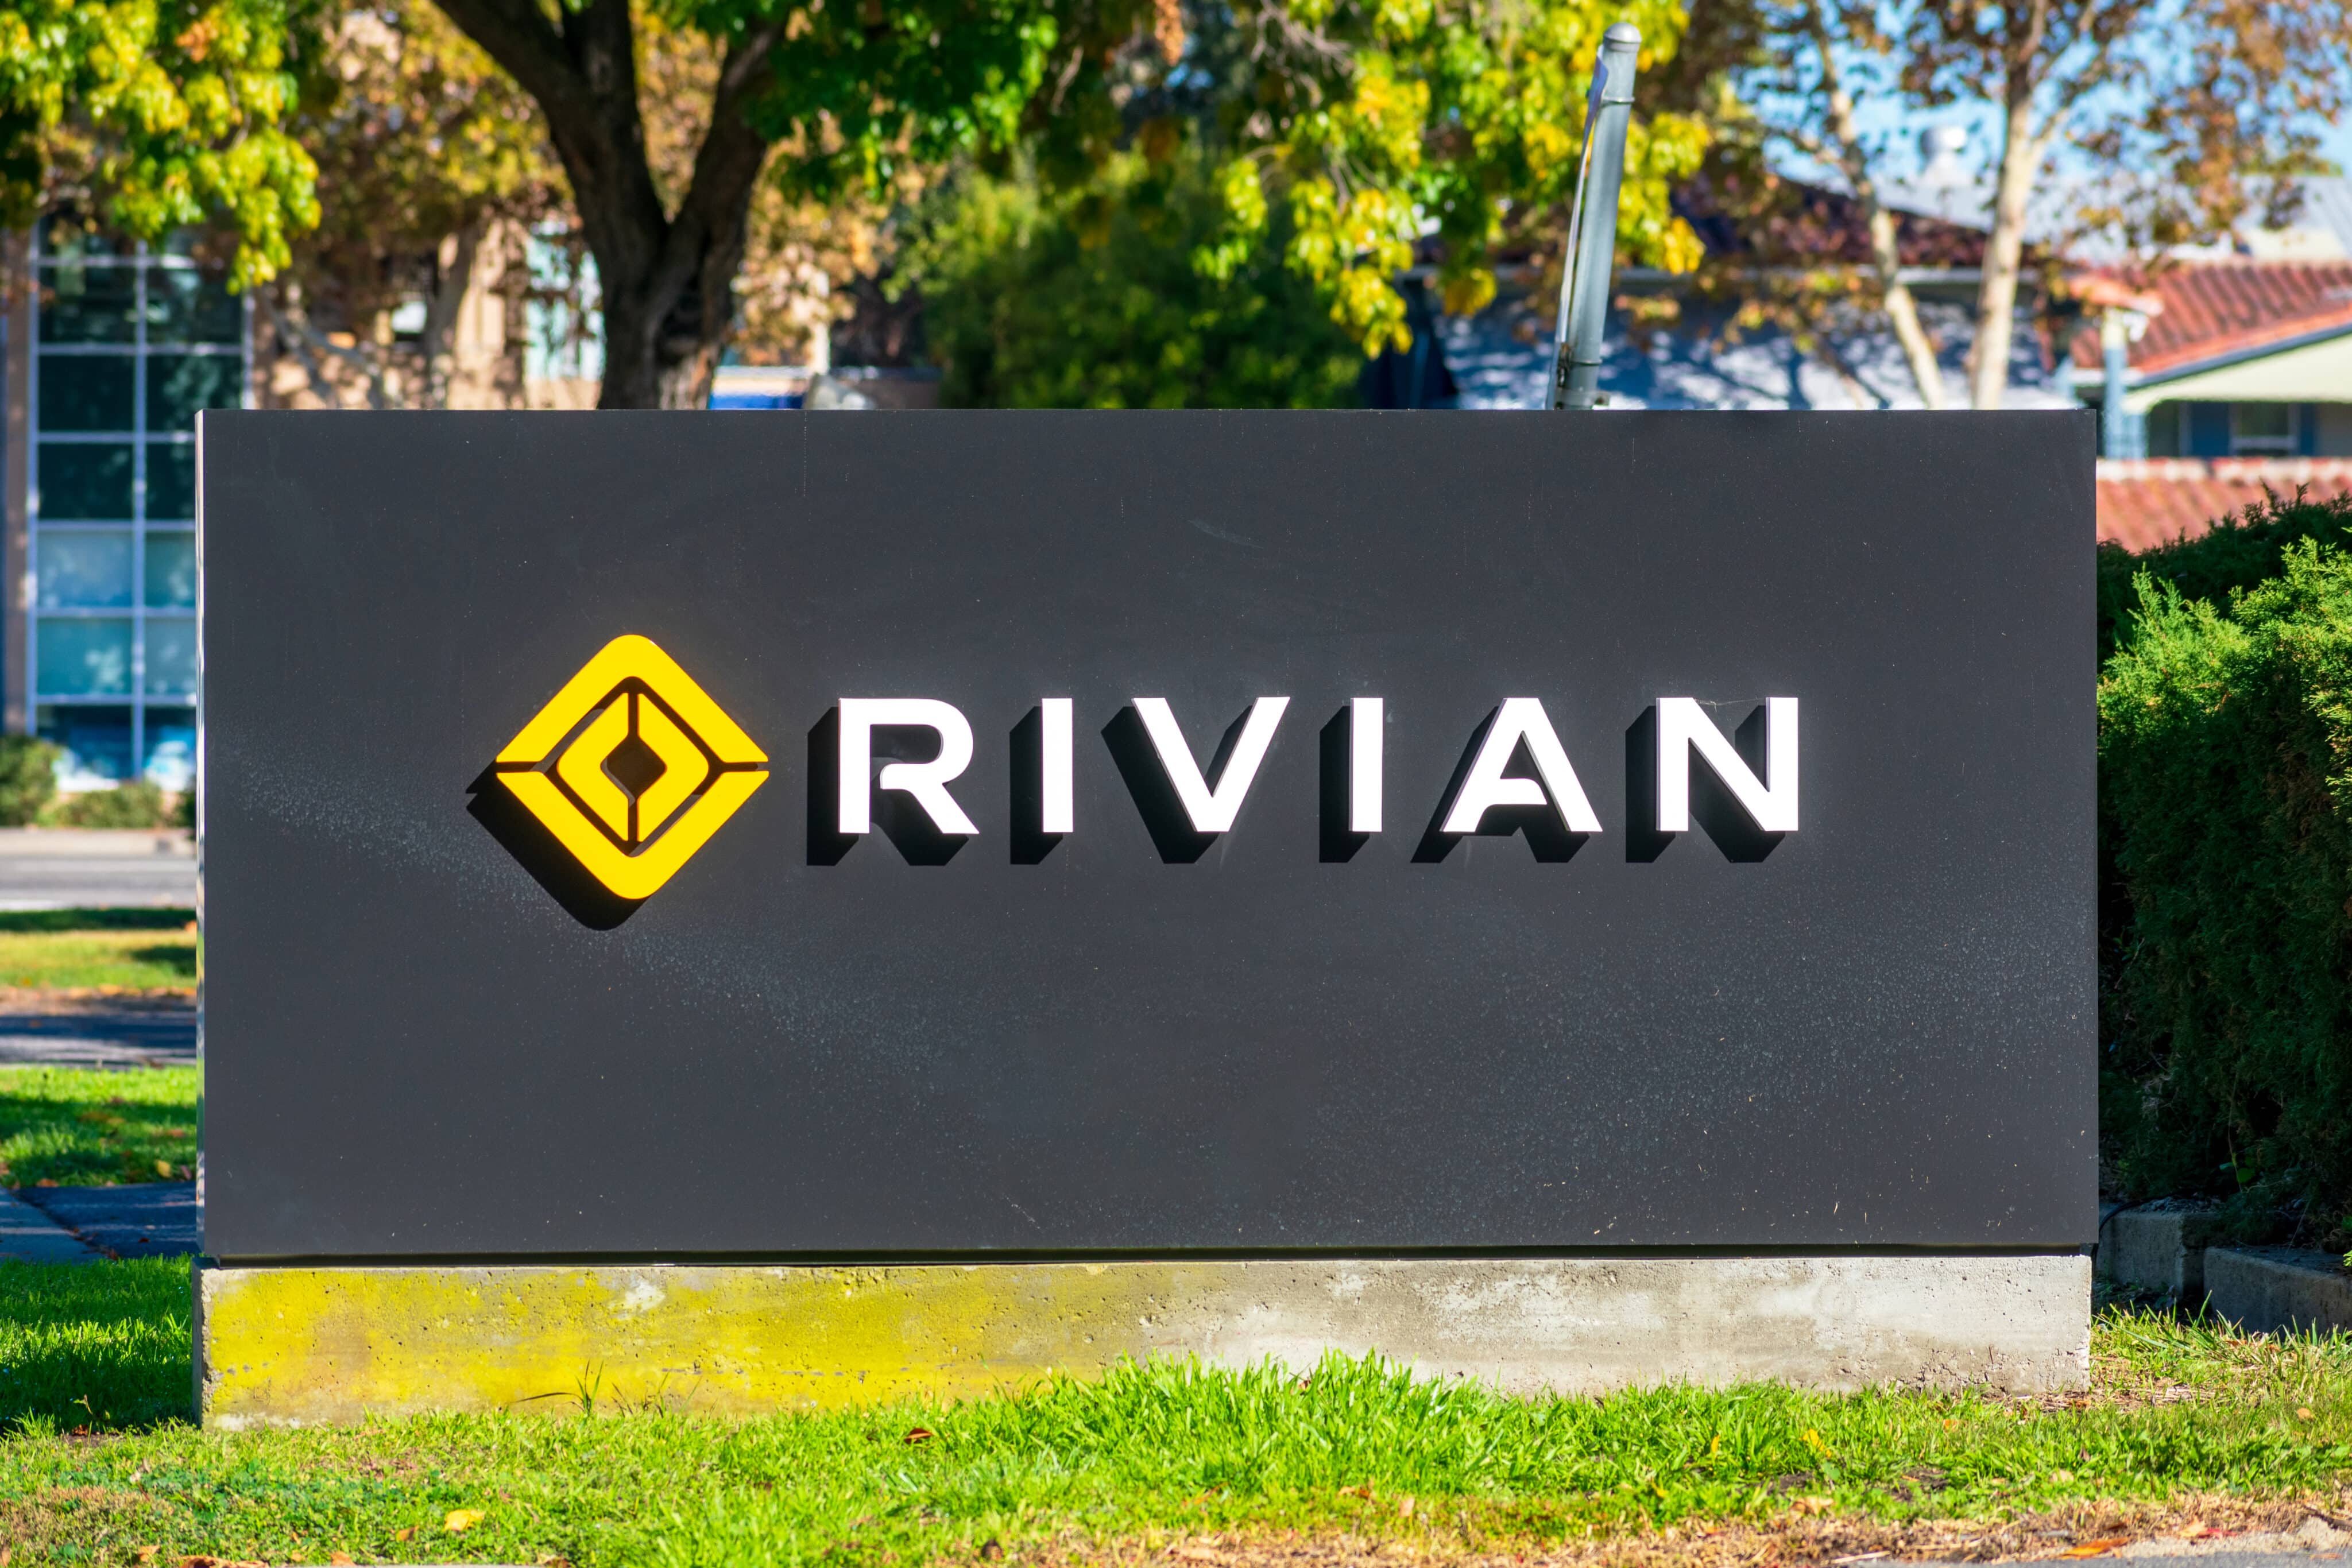 Logo da Rivian em seu HQ no Vale do Silício